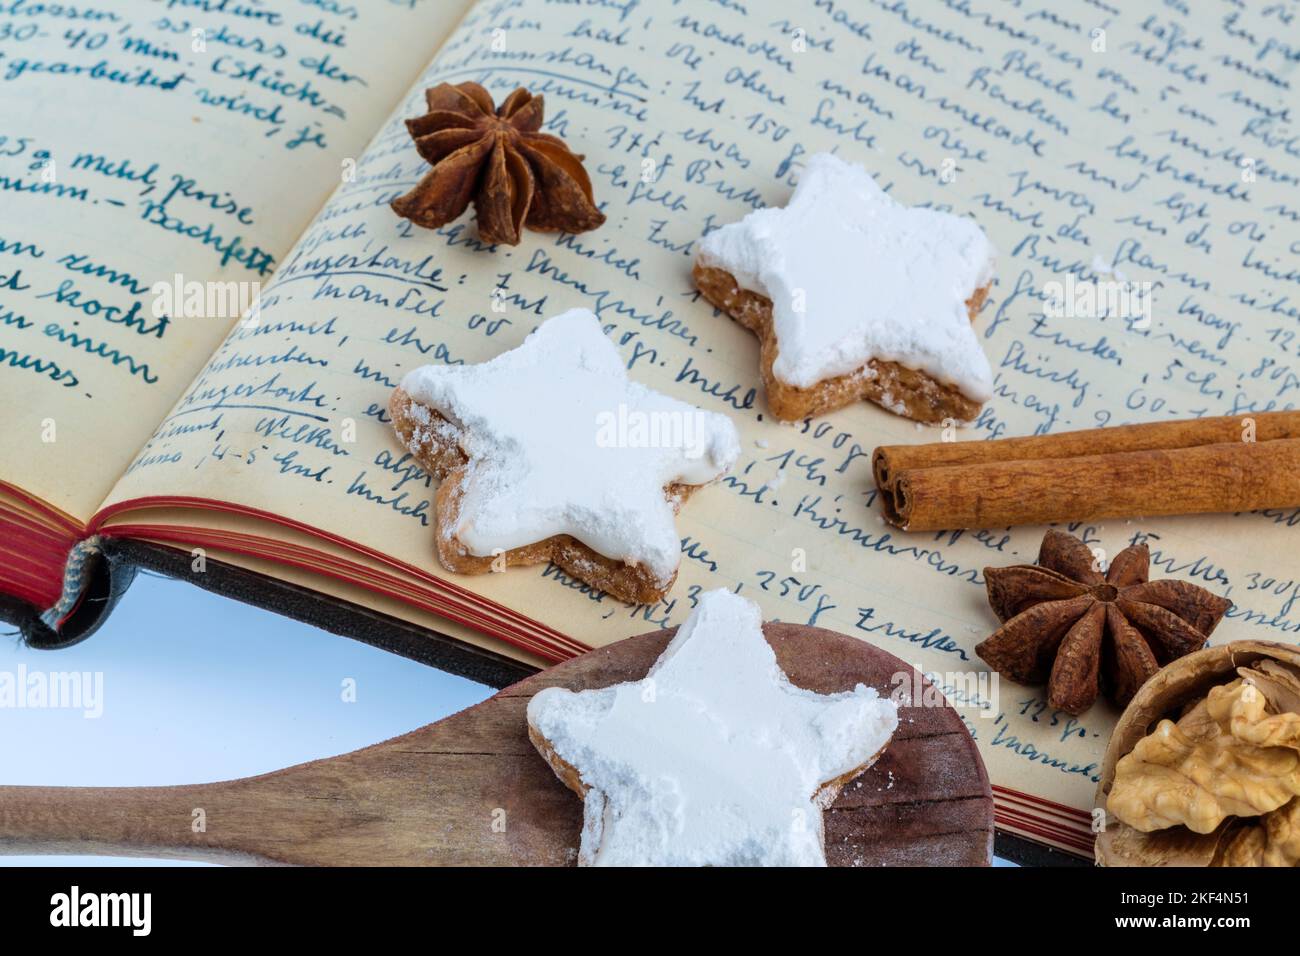 Weihnachtsbäckerei, Zutaten für Kekse und Plätzchen, die zu Weihnachten gebacken werden, Rezeptbuch, Omas Rezepte, Stock Photo